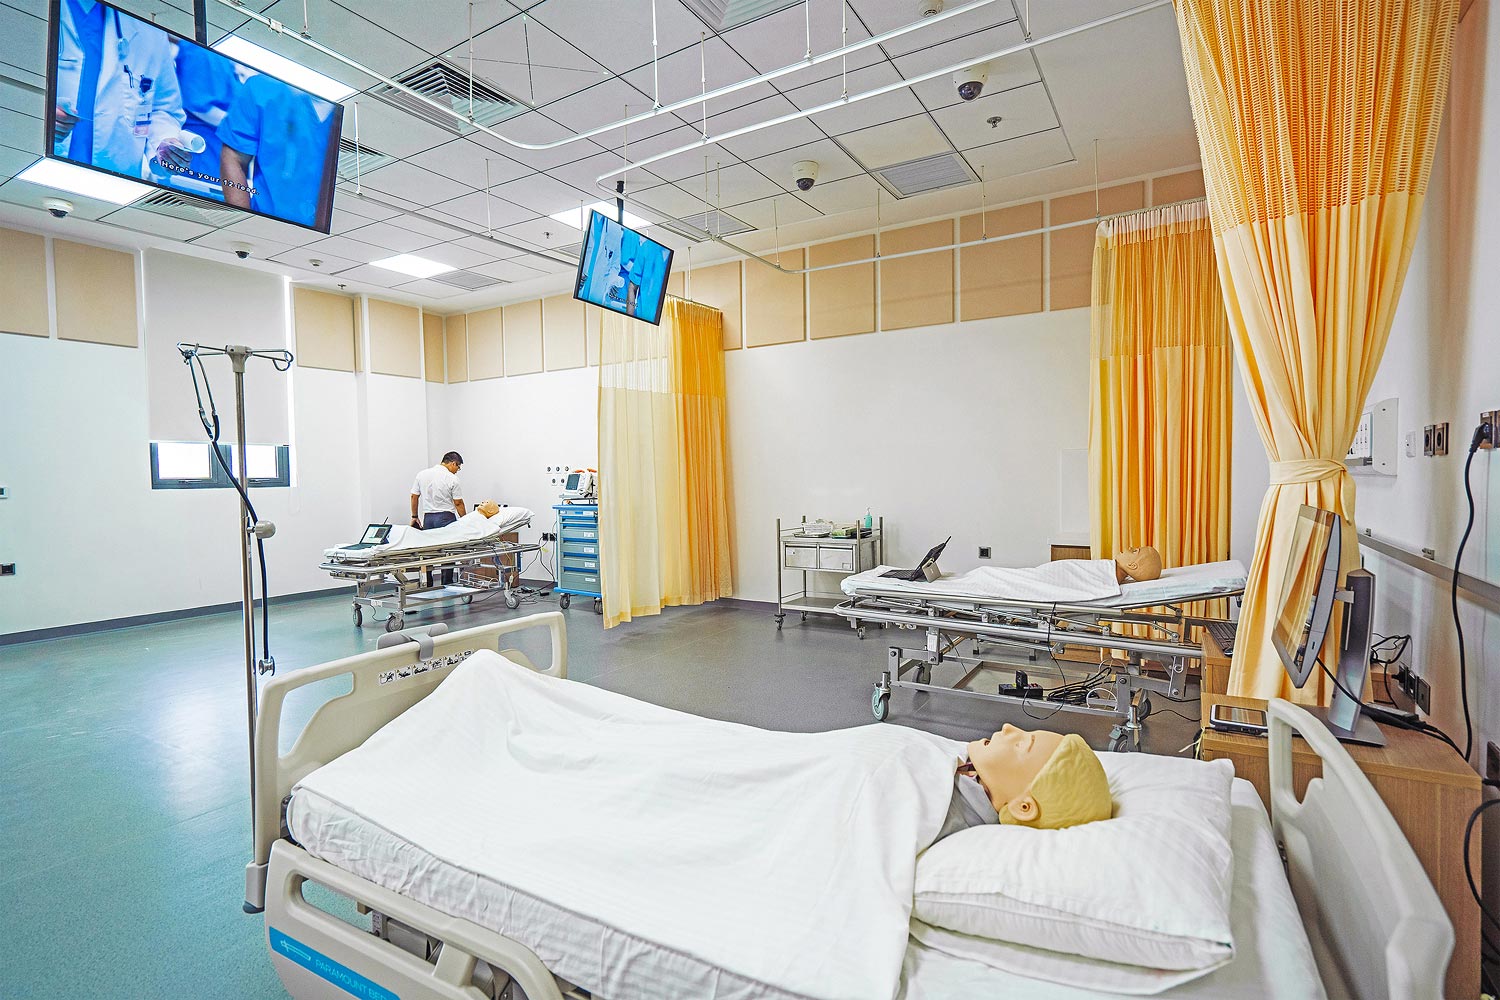 Les structures de formation médicale de la VinUniversity offrent une grande variété de salles, d'unités de soin, et d'installations d'intervention d'urgence qui reproduisent des situations réelles.